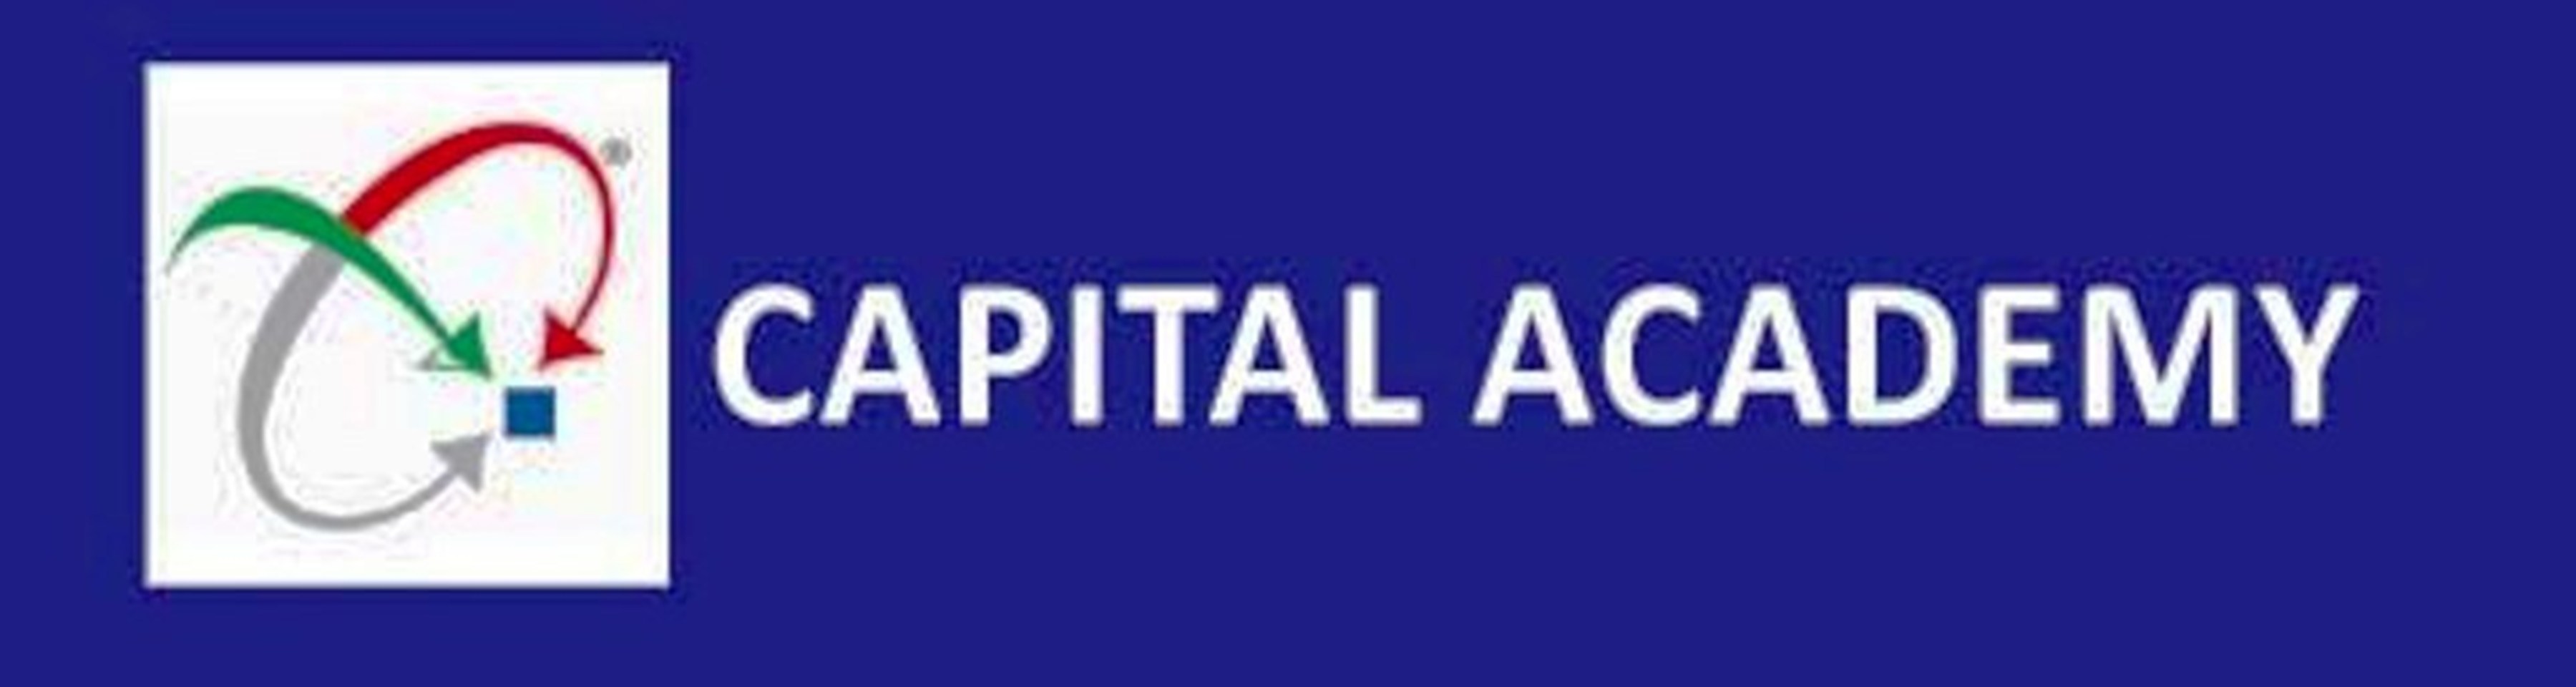 Capital Academy